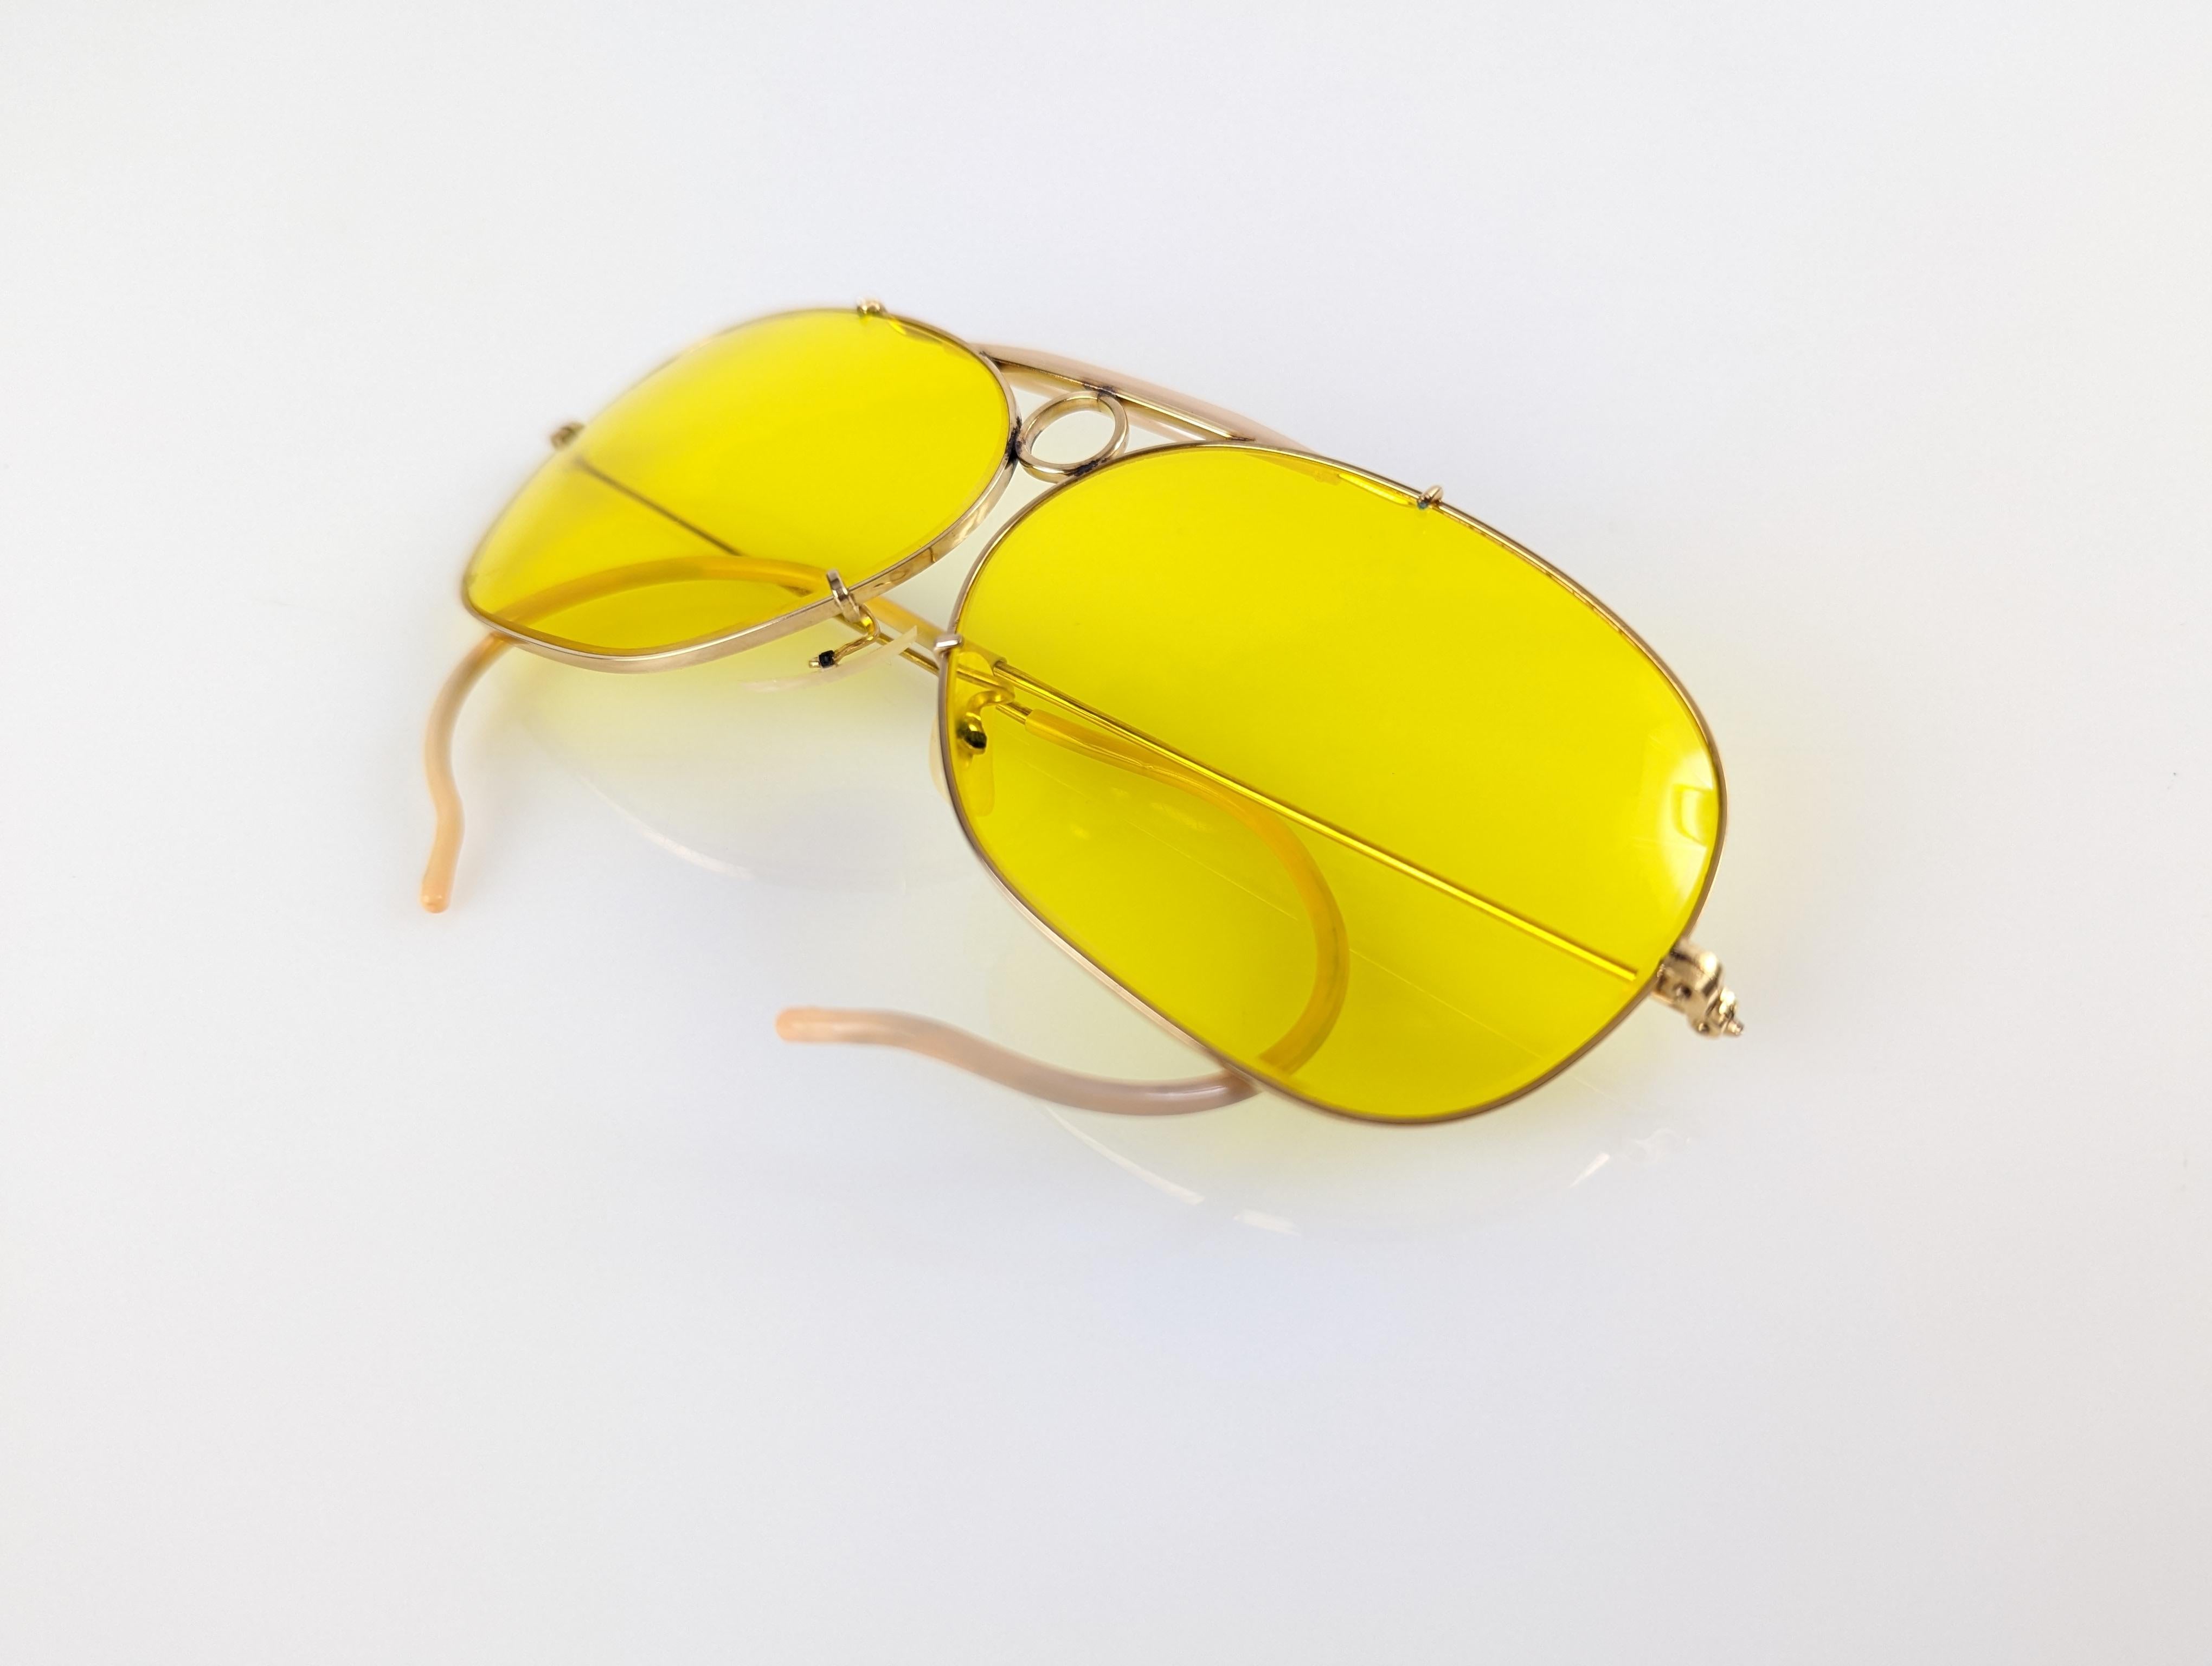 Vergoldete Bausch & Lomb Aviator Shooter Brille in einer der seltensten Versionen mit der Aufschrift 1/30 10K GO und Kalichrome Gläser aus den 70er Jahren. Super exklusiv.